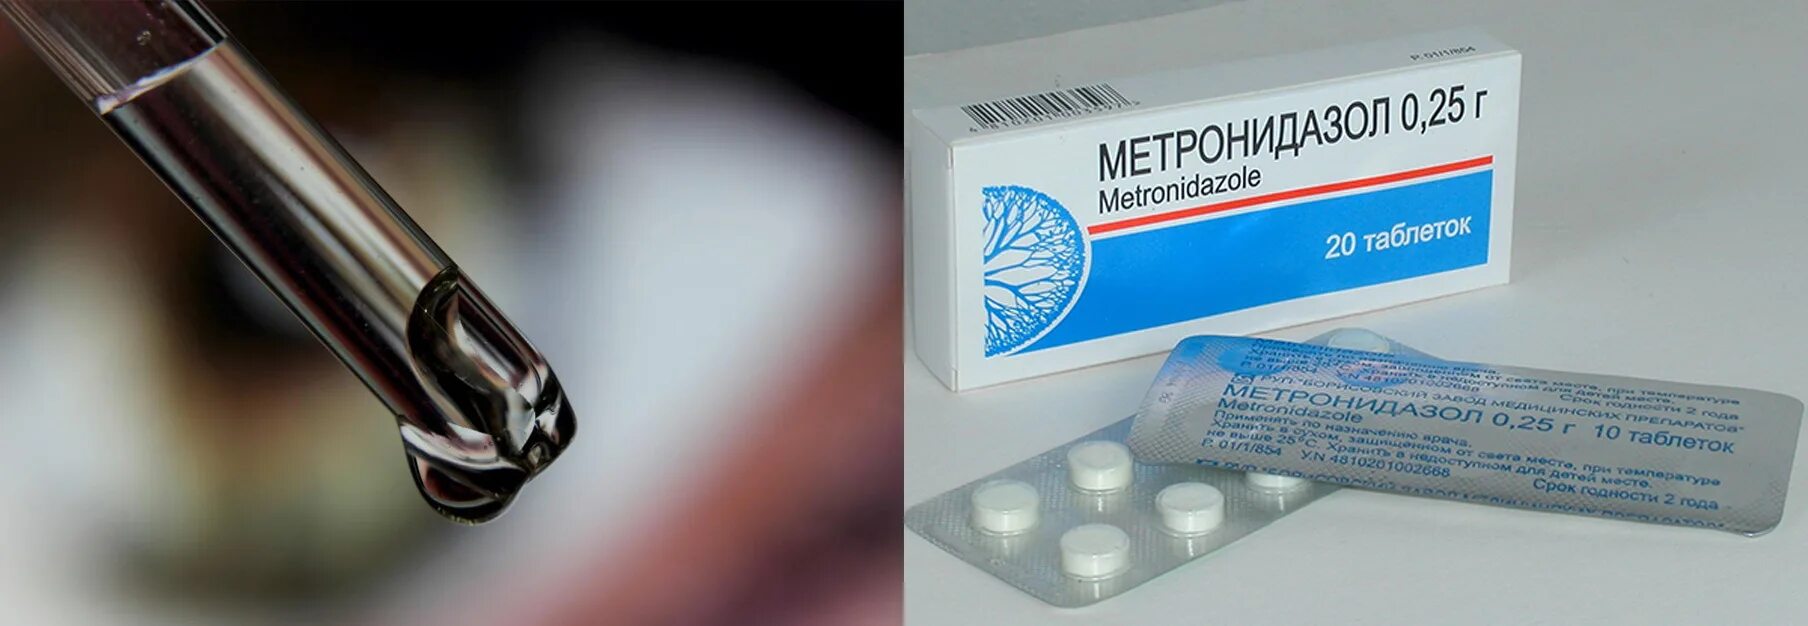 Метронидазол 2,5. Метронидазол таблетки 500 мг для индюшат. Метронидазола для индюков.